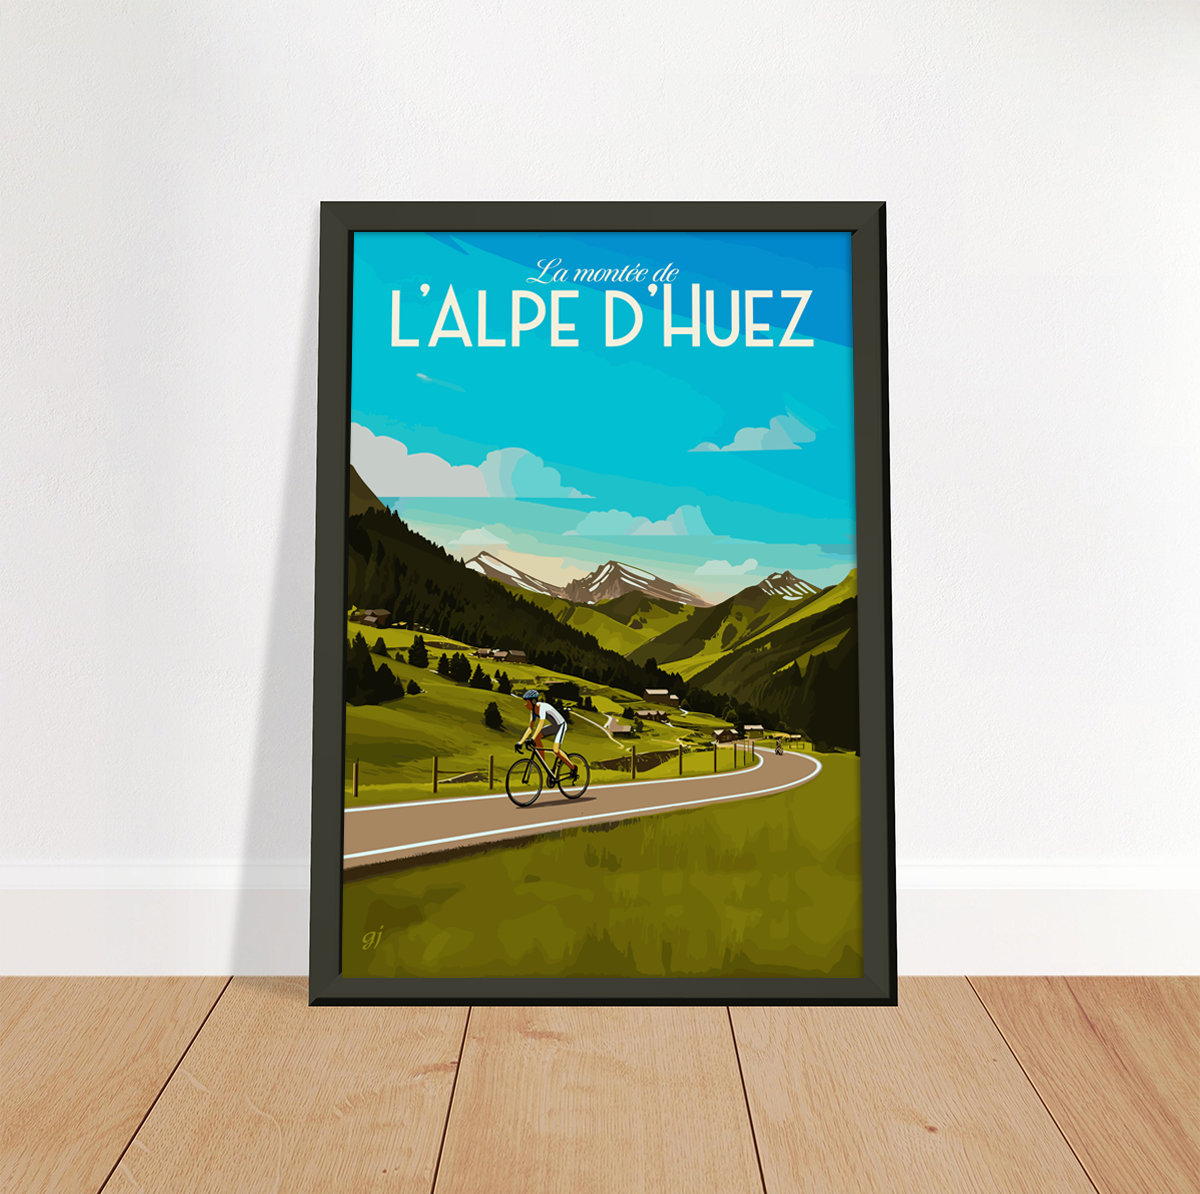 Alpe d'Huez poster by bon voyage design